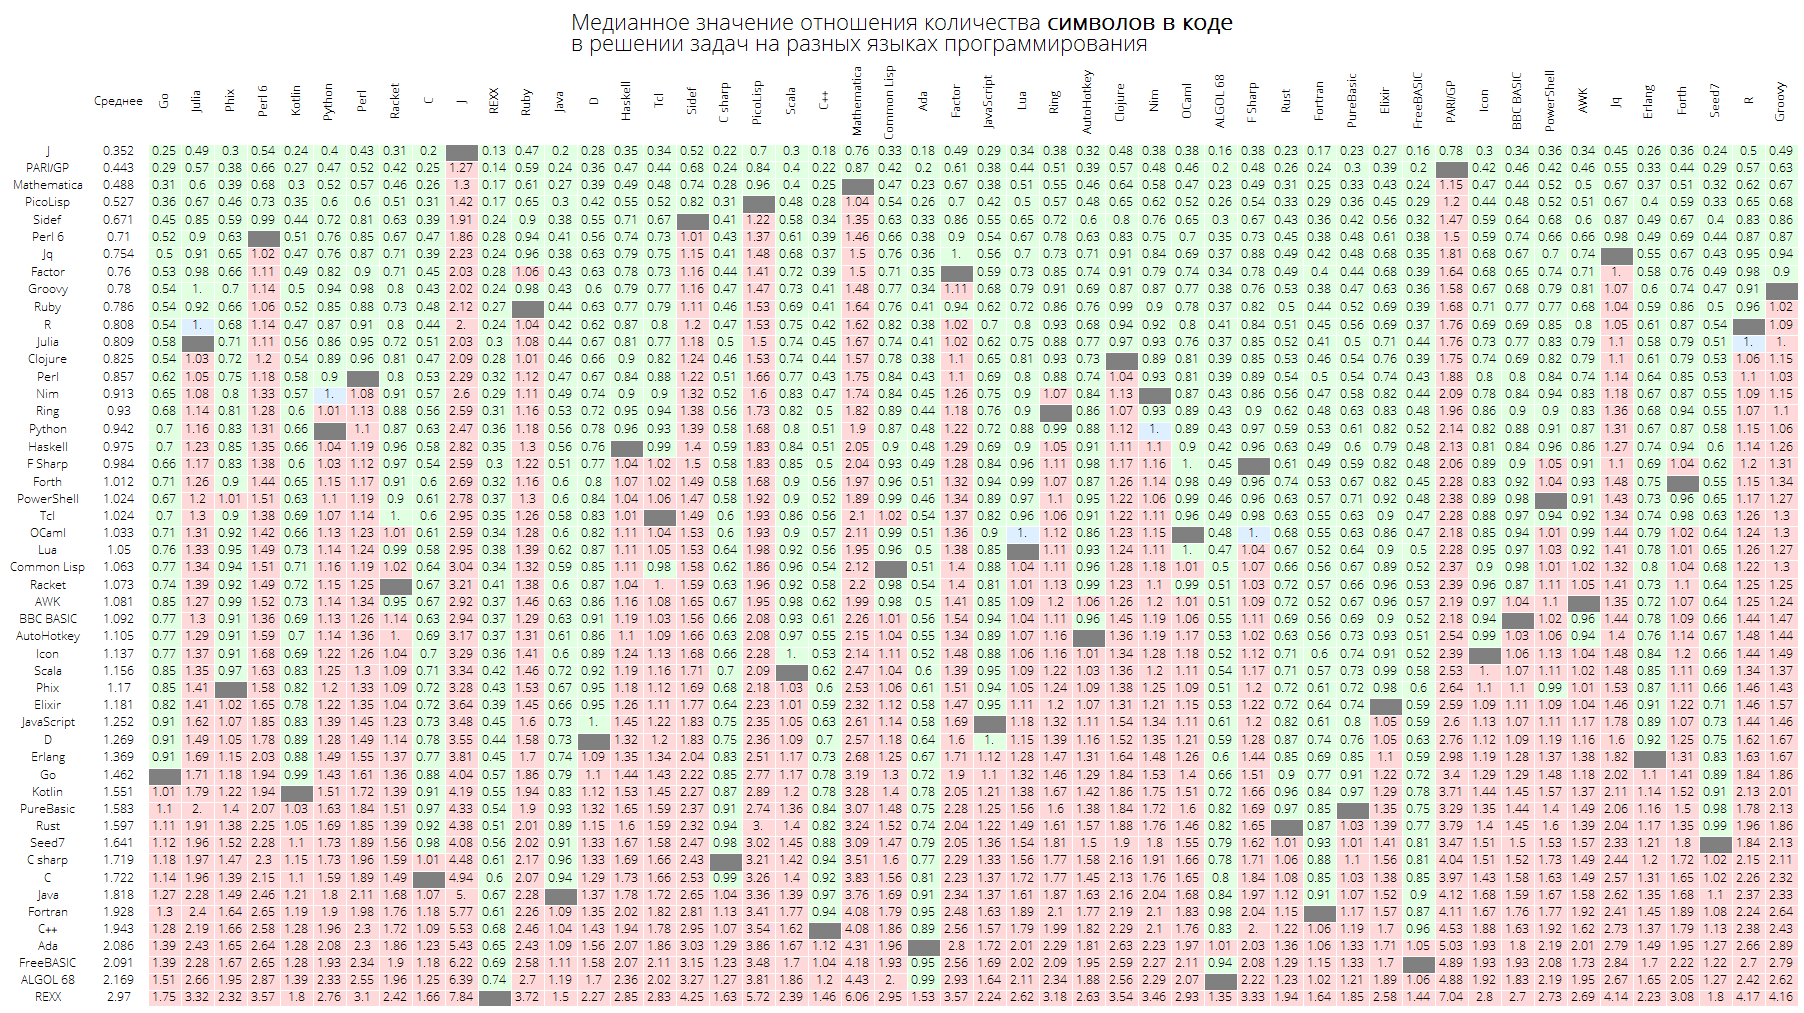 Розеттский код: измеряем длину кода в огромном количестве языков программирования, изучаем близость языков между собой - 27